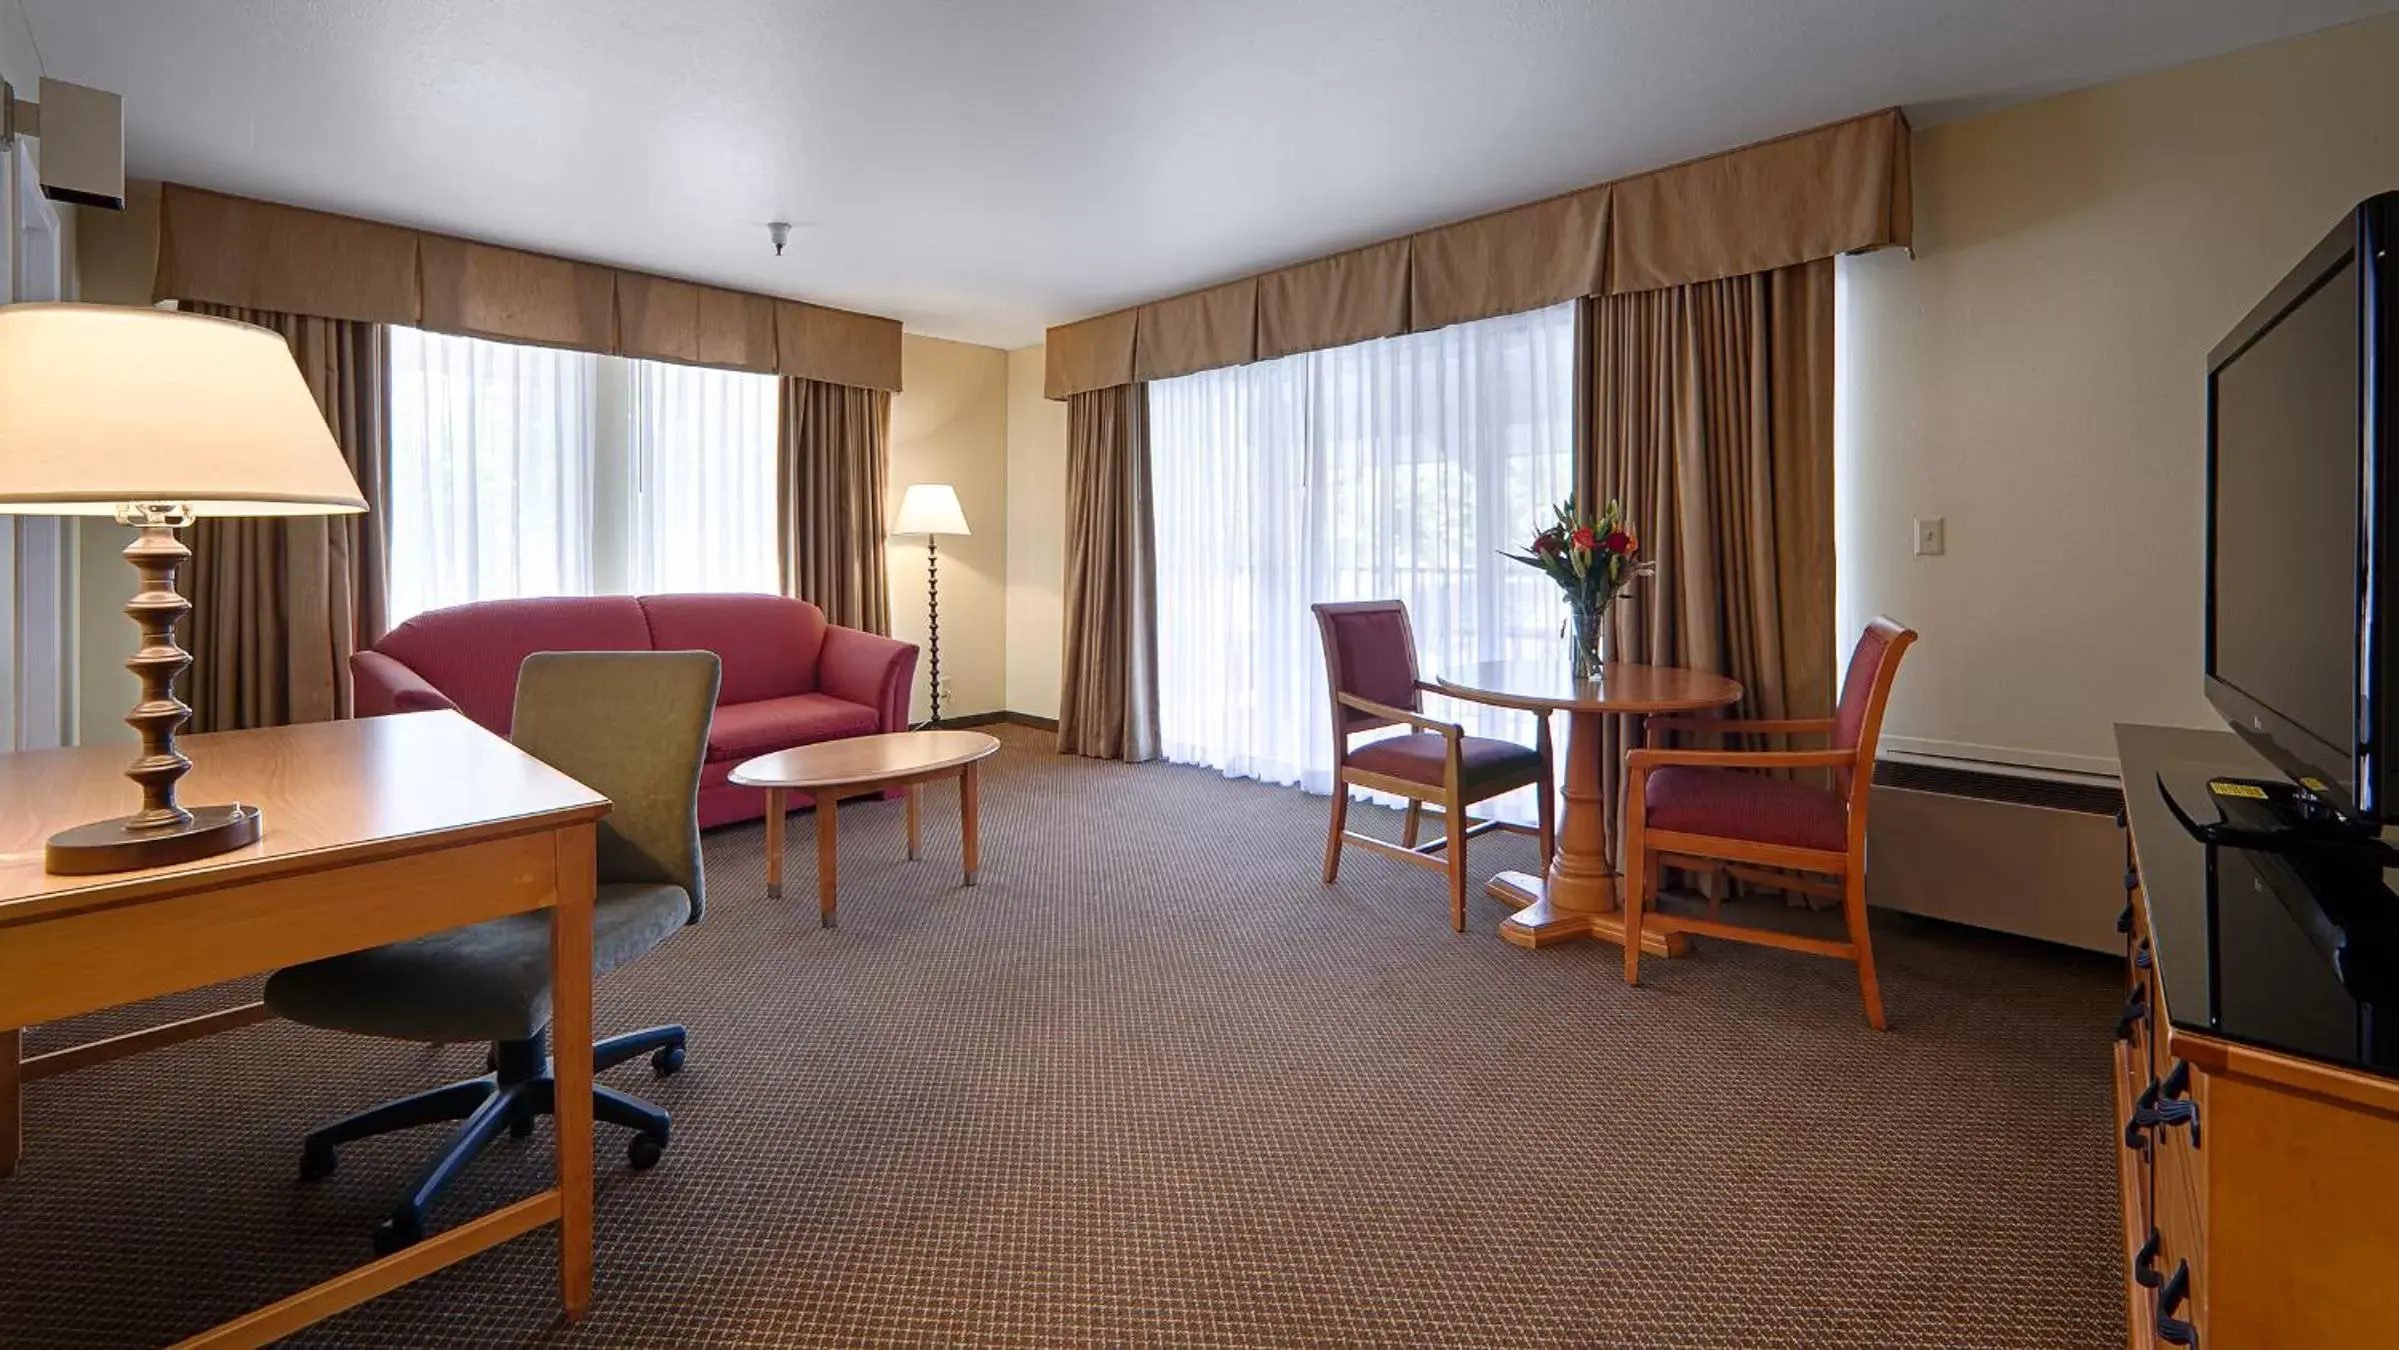 Bedroom, Seating Area in Best Western Plus Inn Scotts Valley